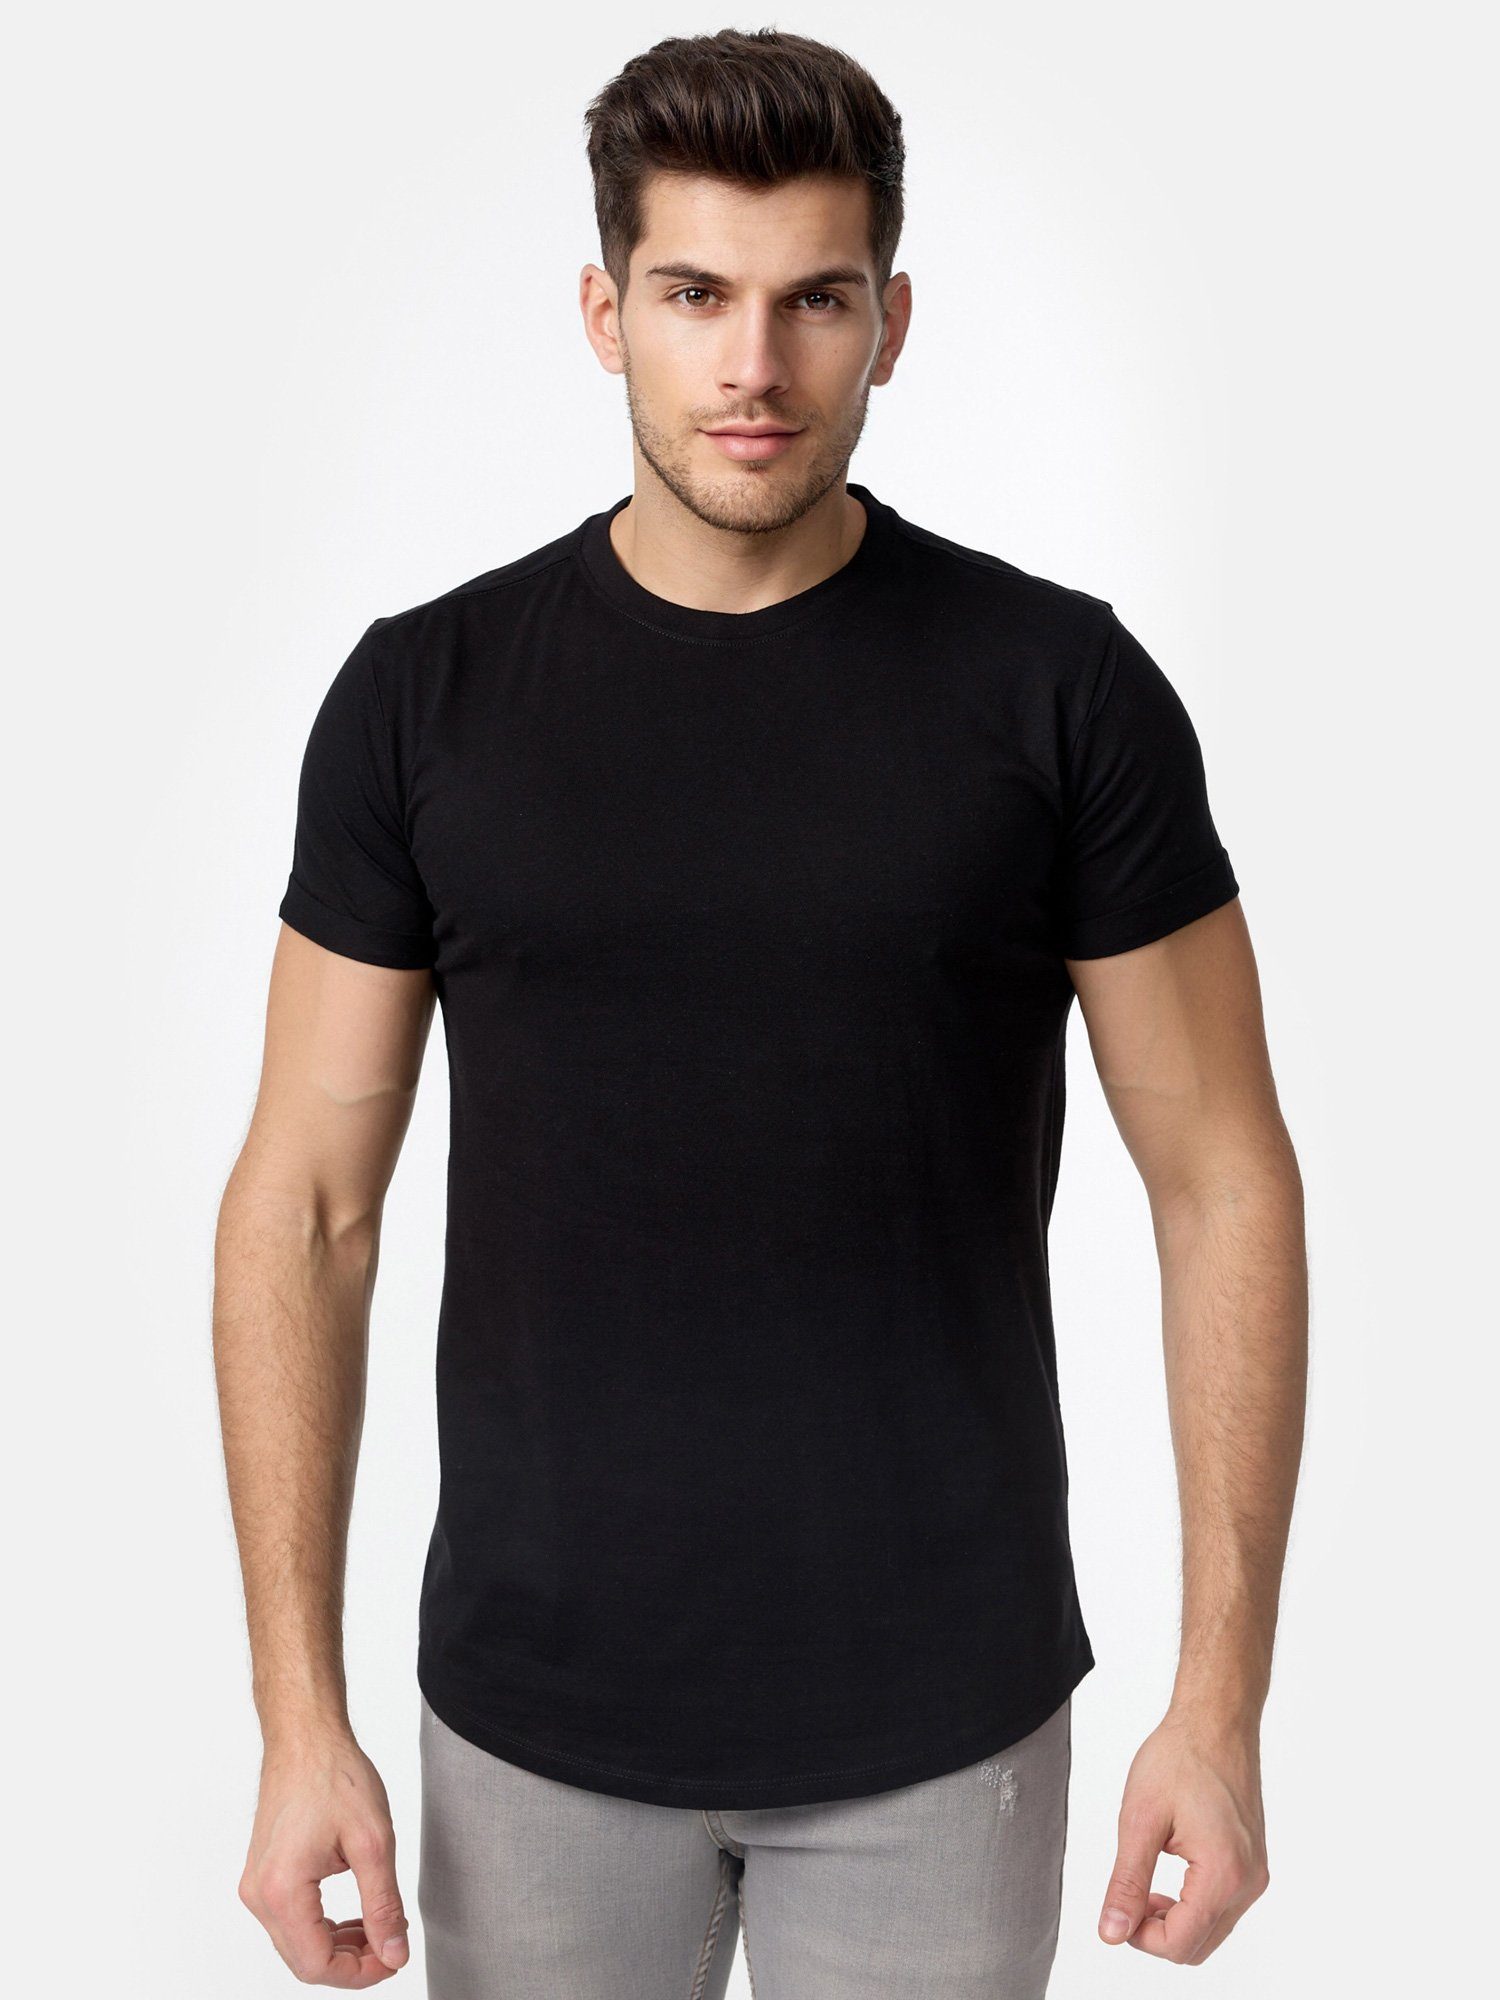 Tazzio T-Shirt E105 Herren Basic Rundhalsshirt schwarz